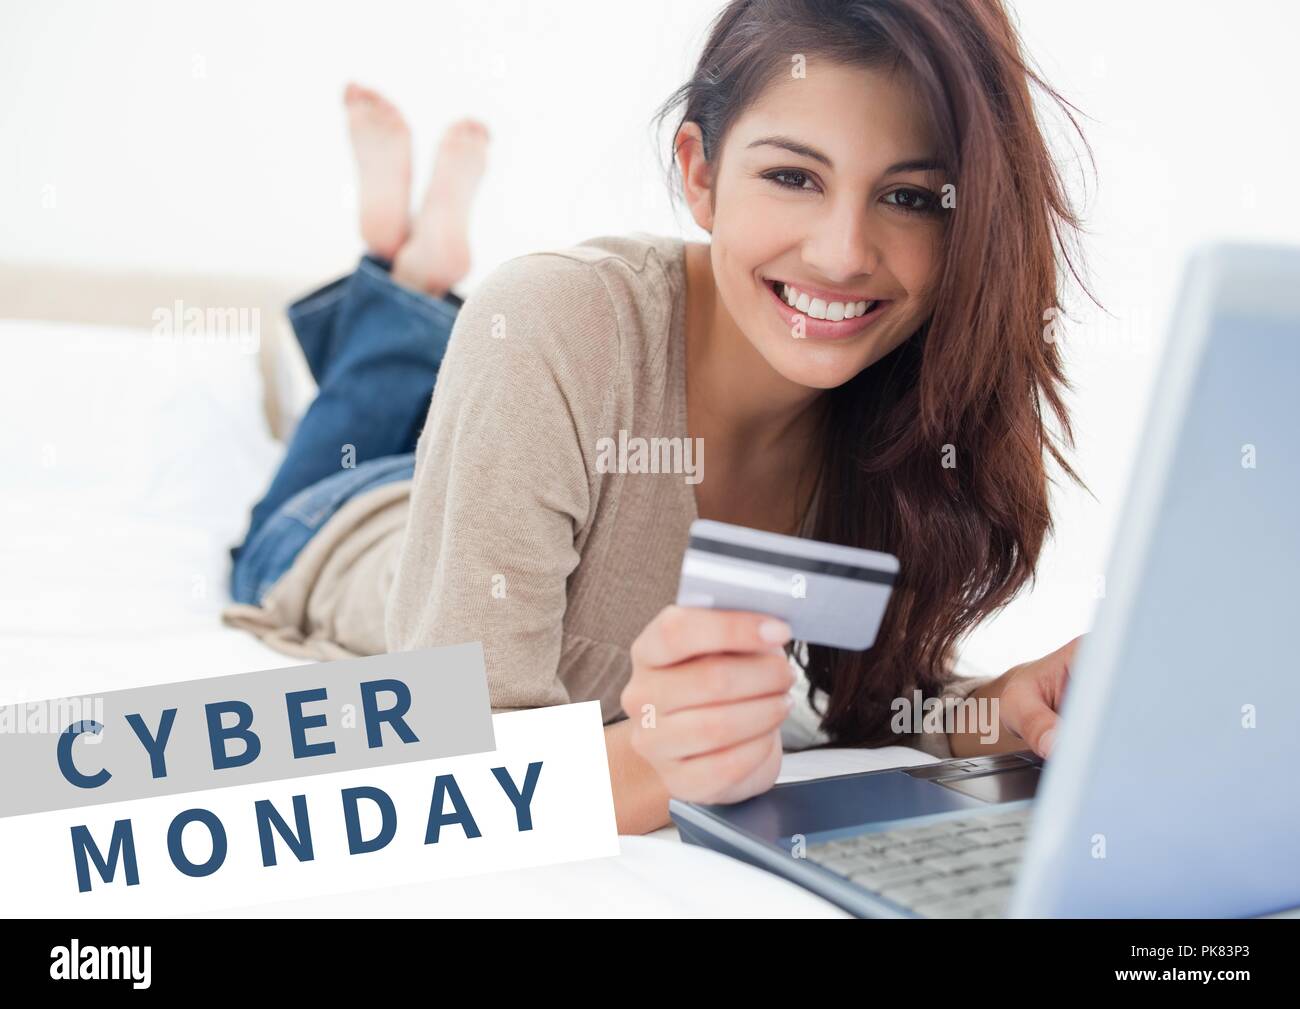 Vente Cyber Monday femme couchée en face de l'ordinateur portable dans sa  main avec la carte bancaire Photo Stock - Alamy